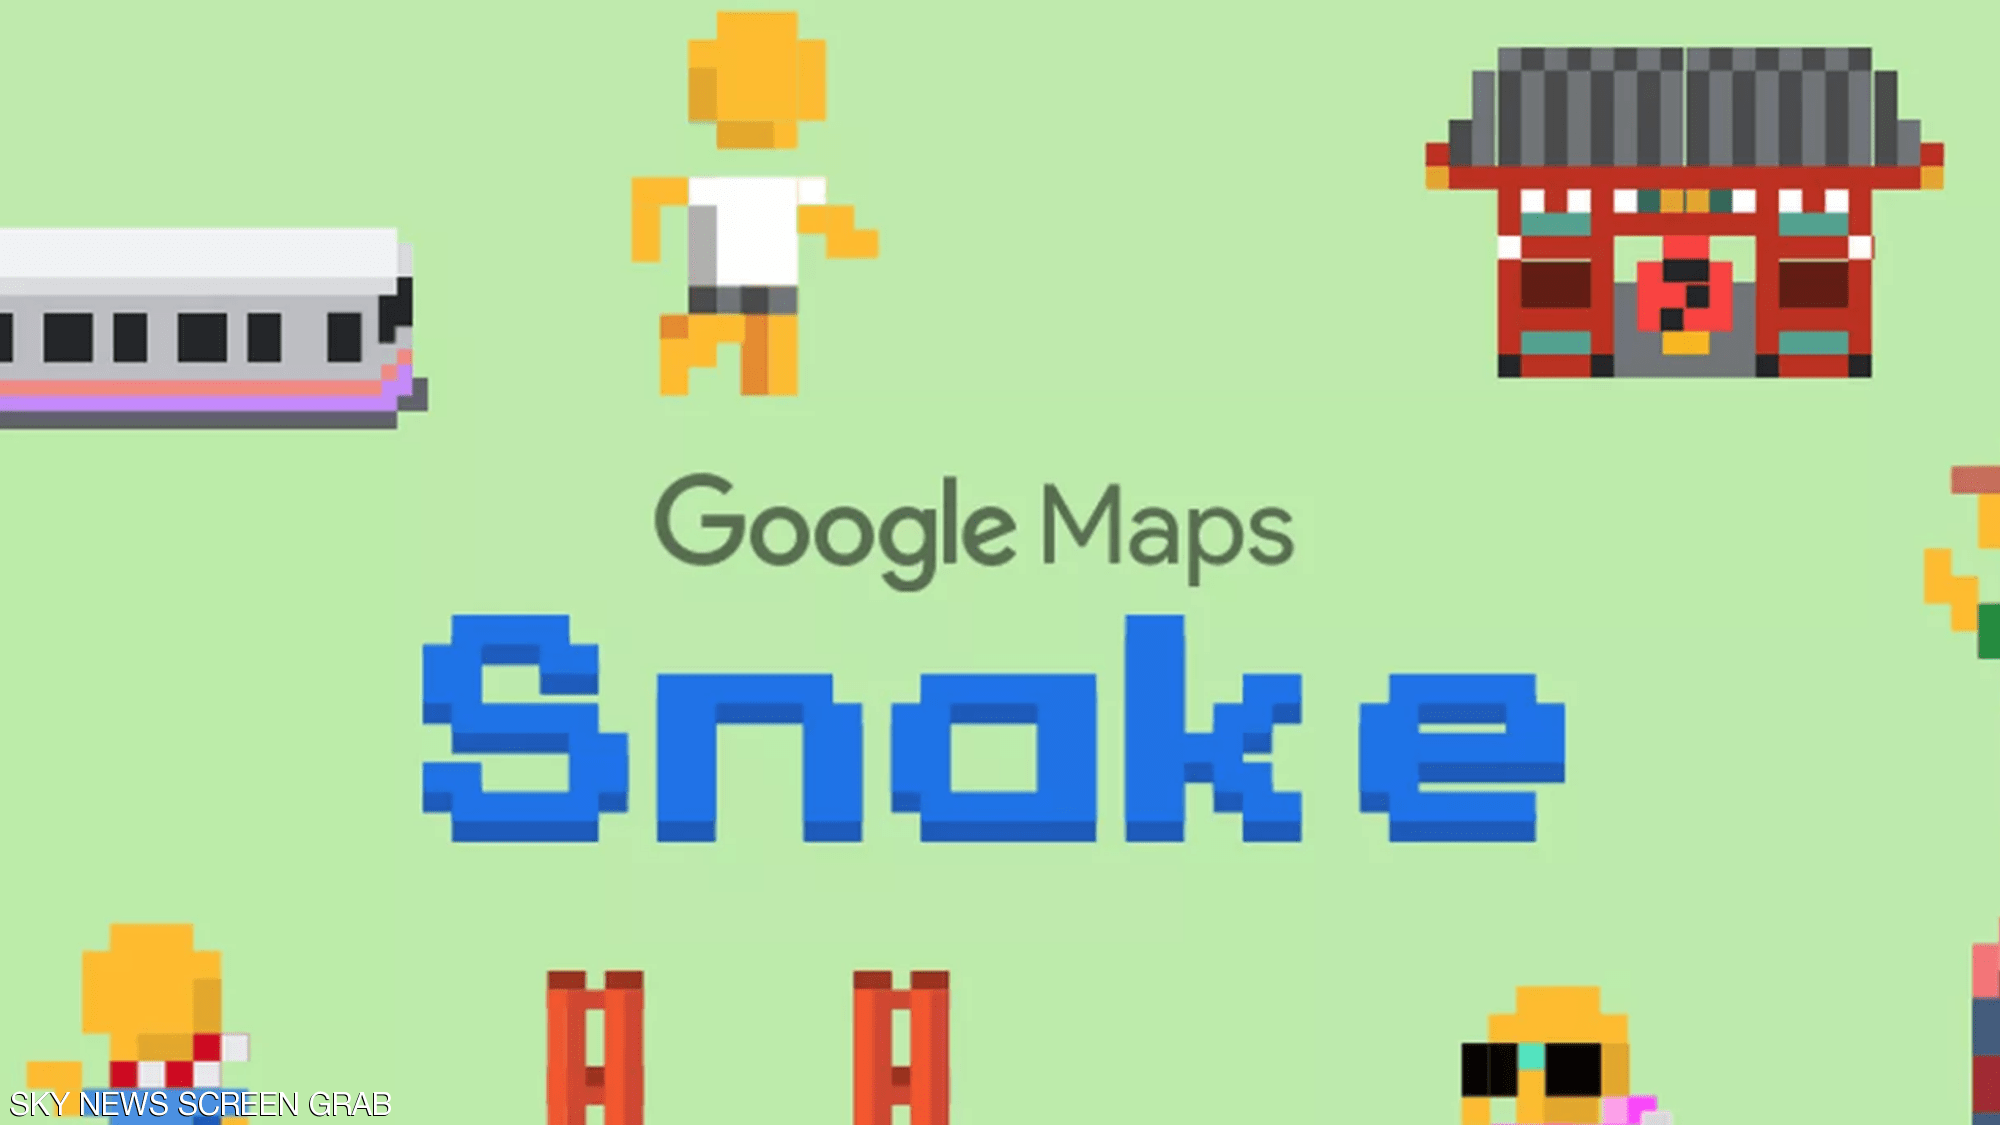 لعبة سنيك على خرائط جوجل كذبة ابريل 2019